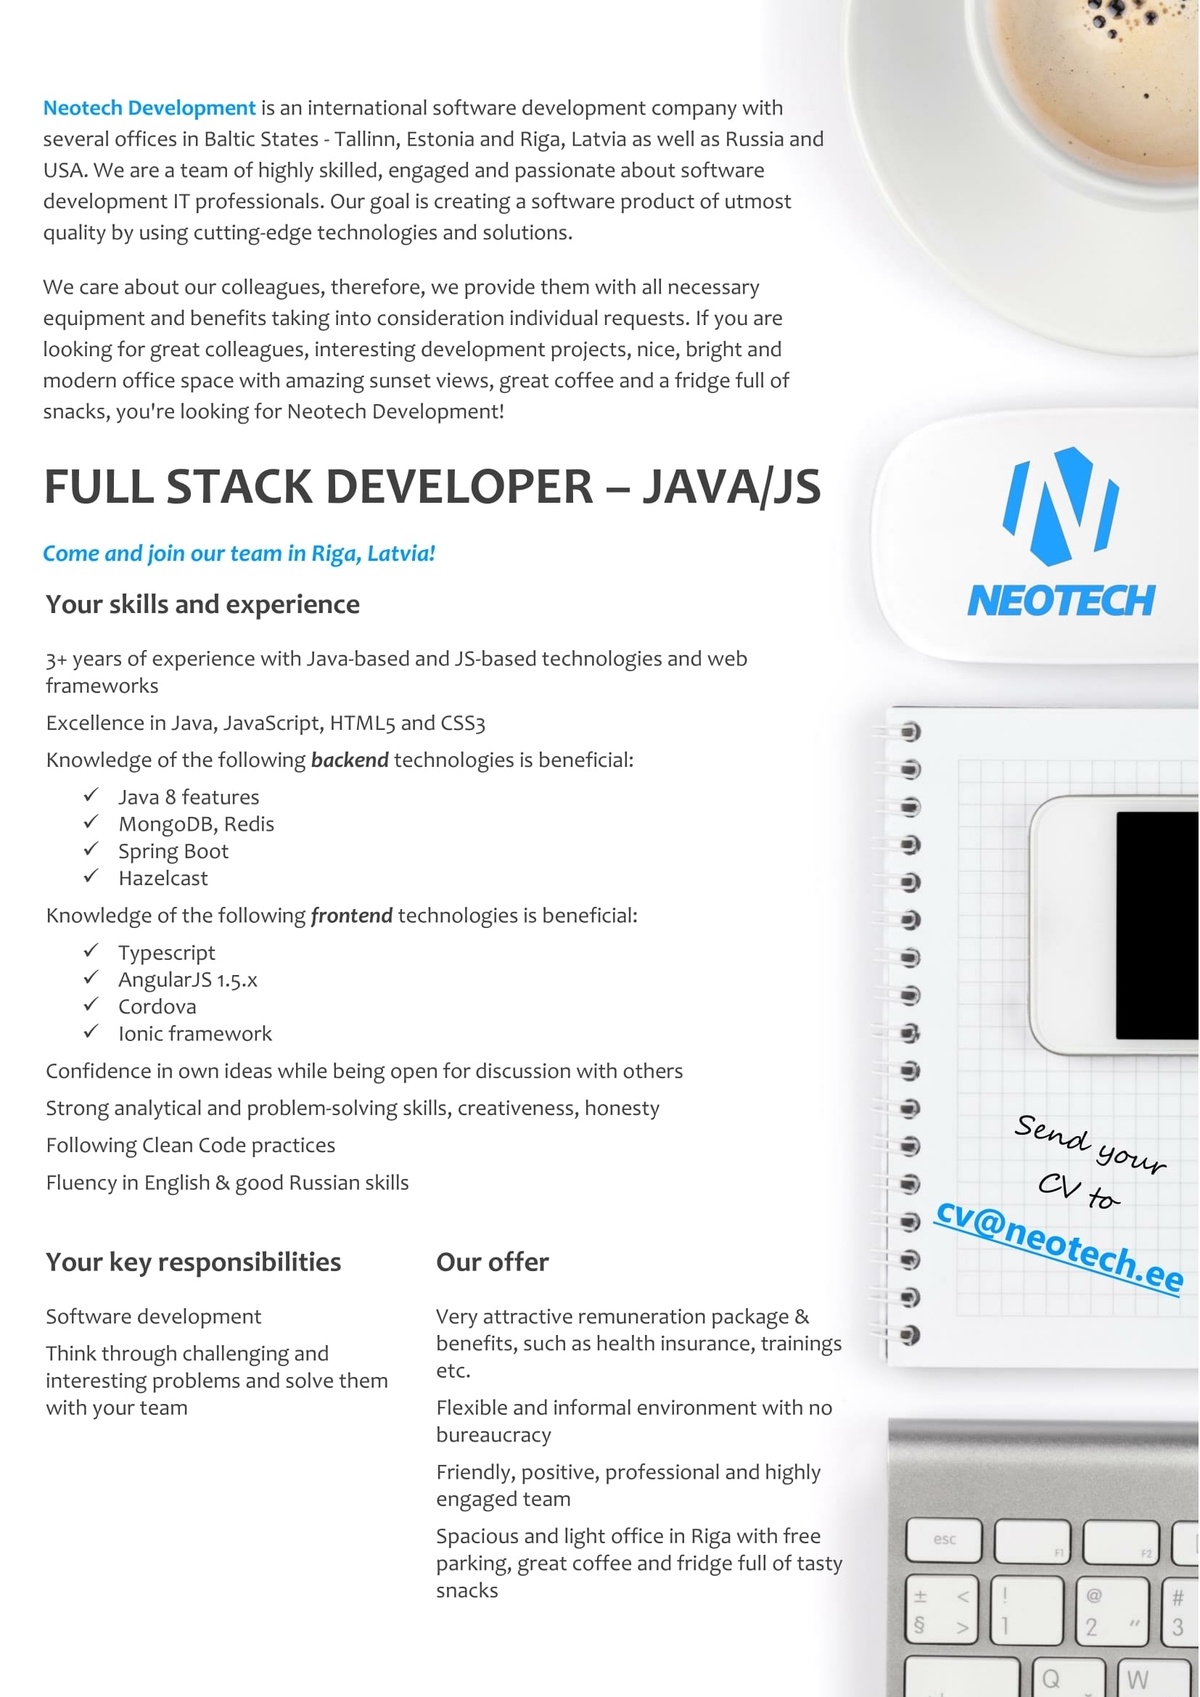 Neotech Development FULL STACK DEVELOPER – JAVA/JS